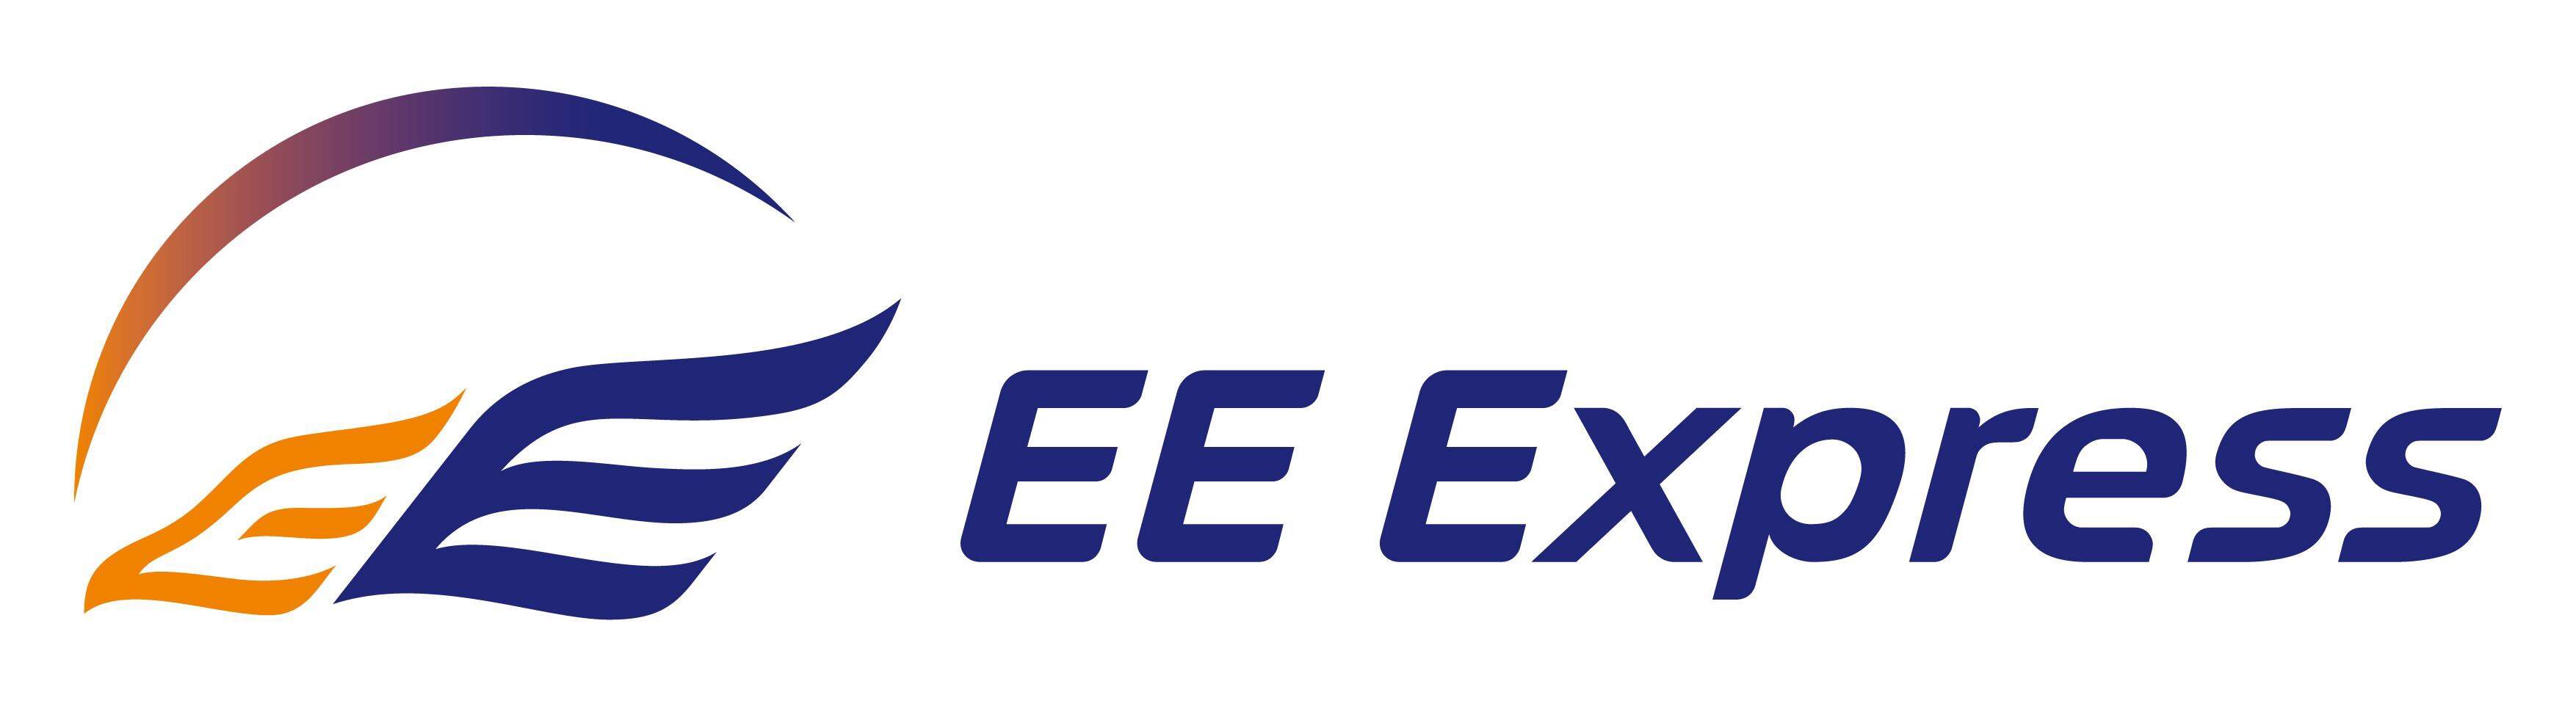 EE Express.jpg